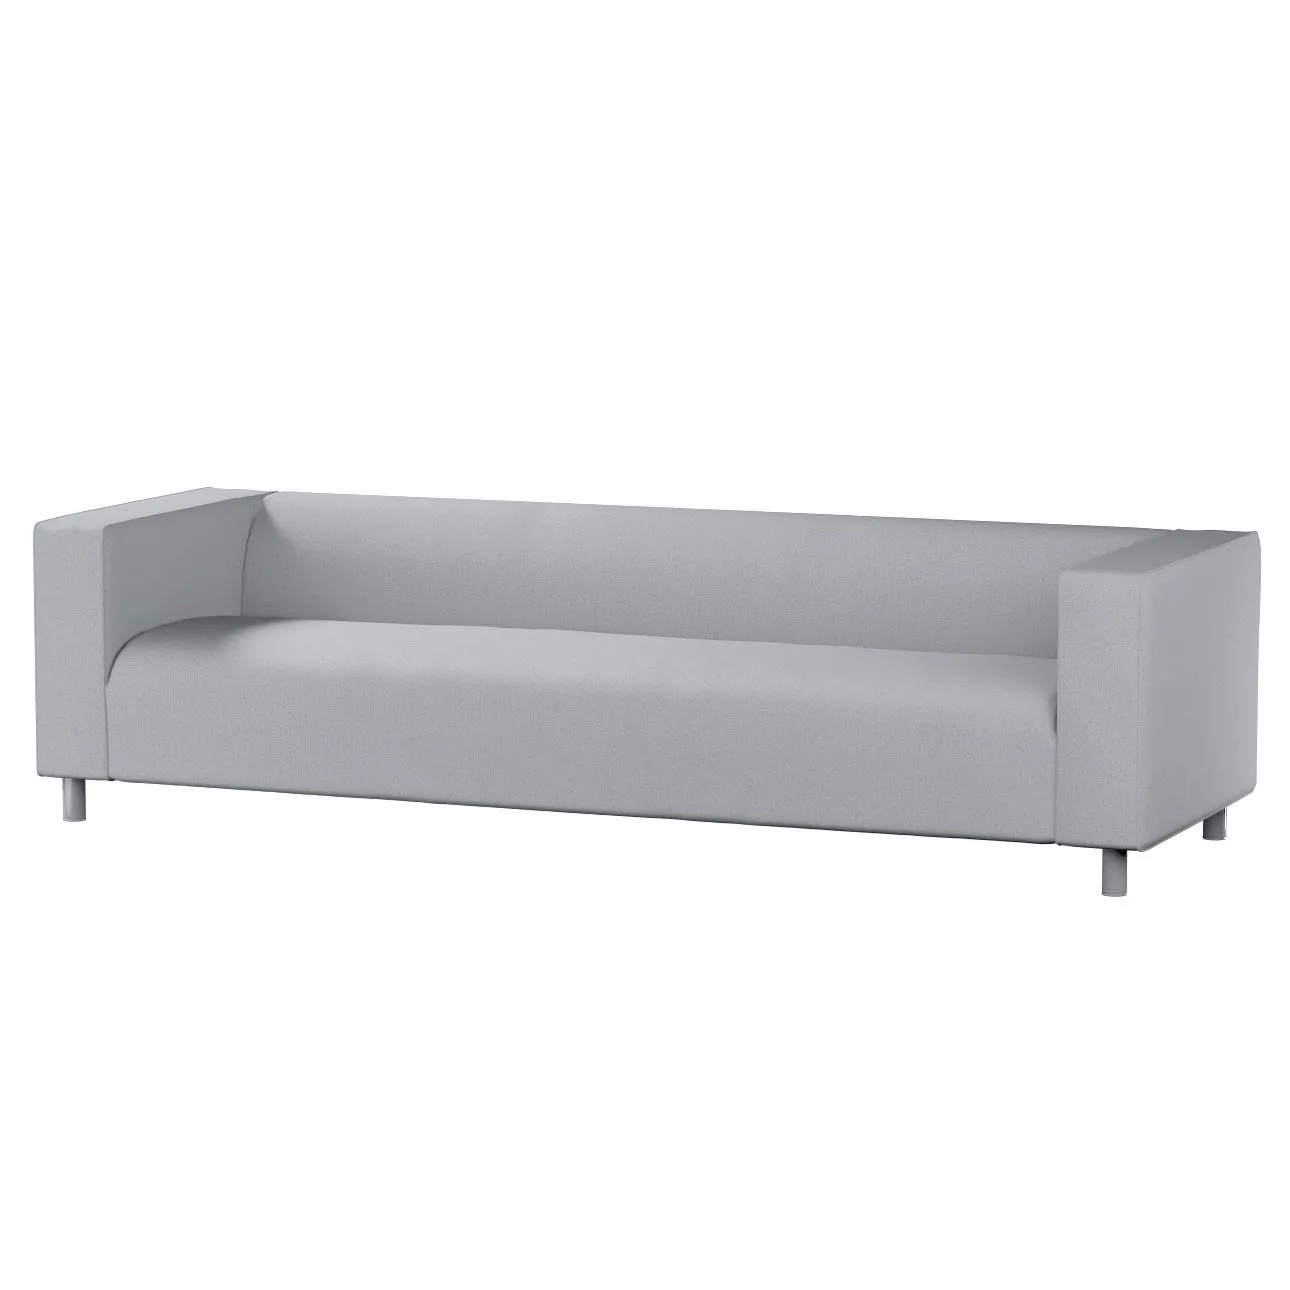 Bezug für Klippan 4-Sitzer Sofa, grau, Bezug für Klippan 4-Sitzer, Amsterda günstig online kaufen